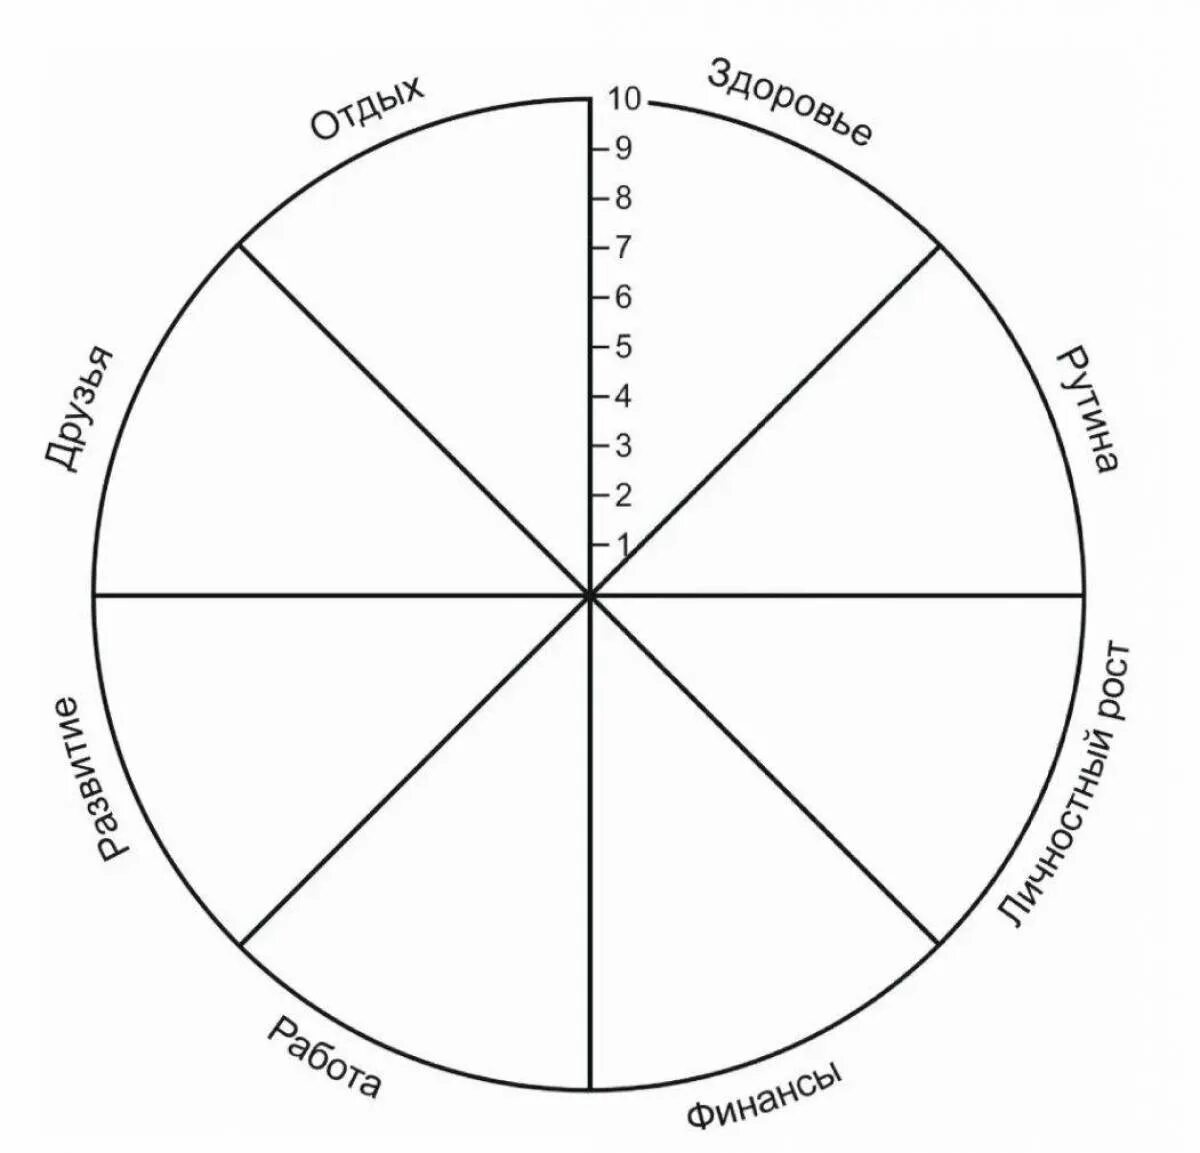 Круг основных интересов. Колесо жизненного баланса 8 сфер. Схема колеса жизненного баланса. Коле/о жизненного баланса. Колесо жизни, баланс жизни (8 основных сфер).